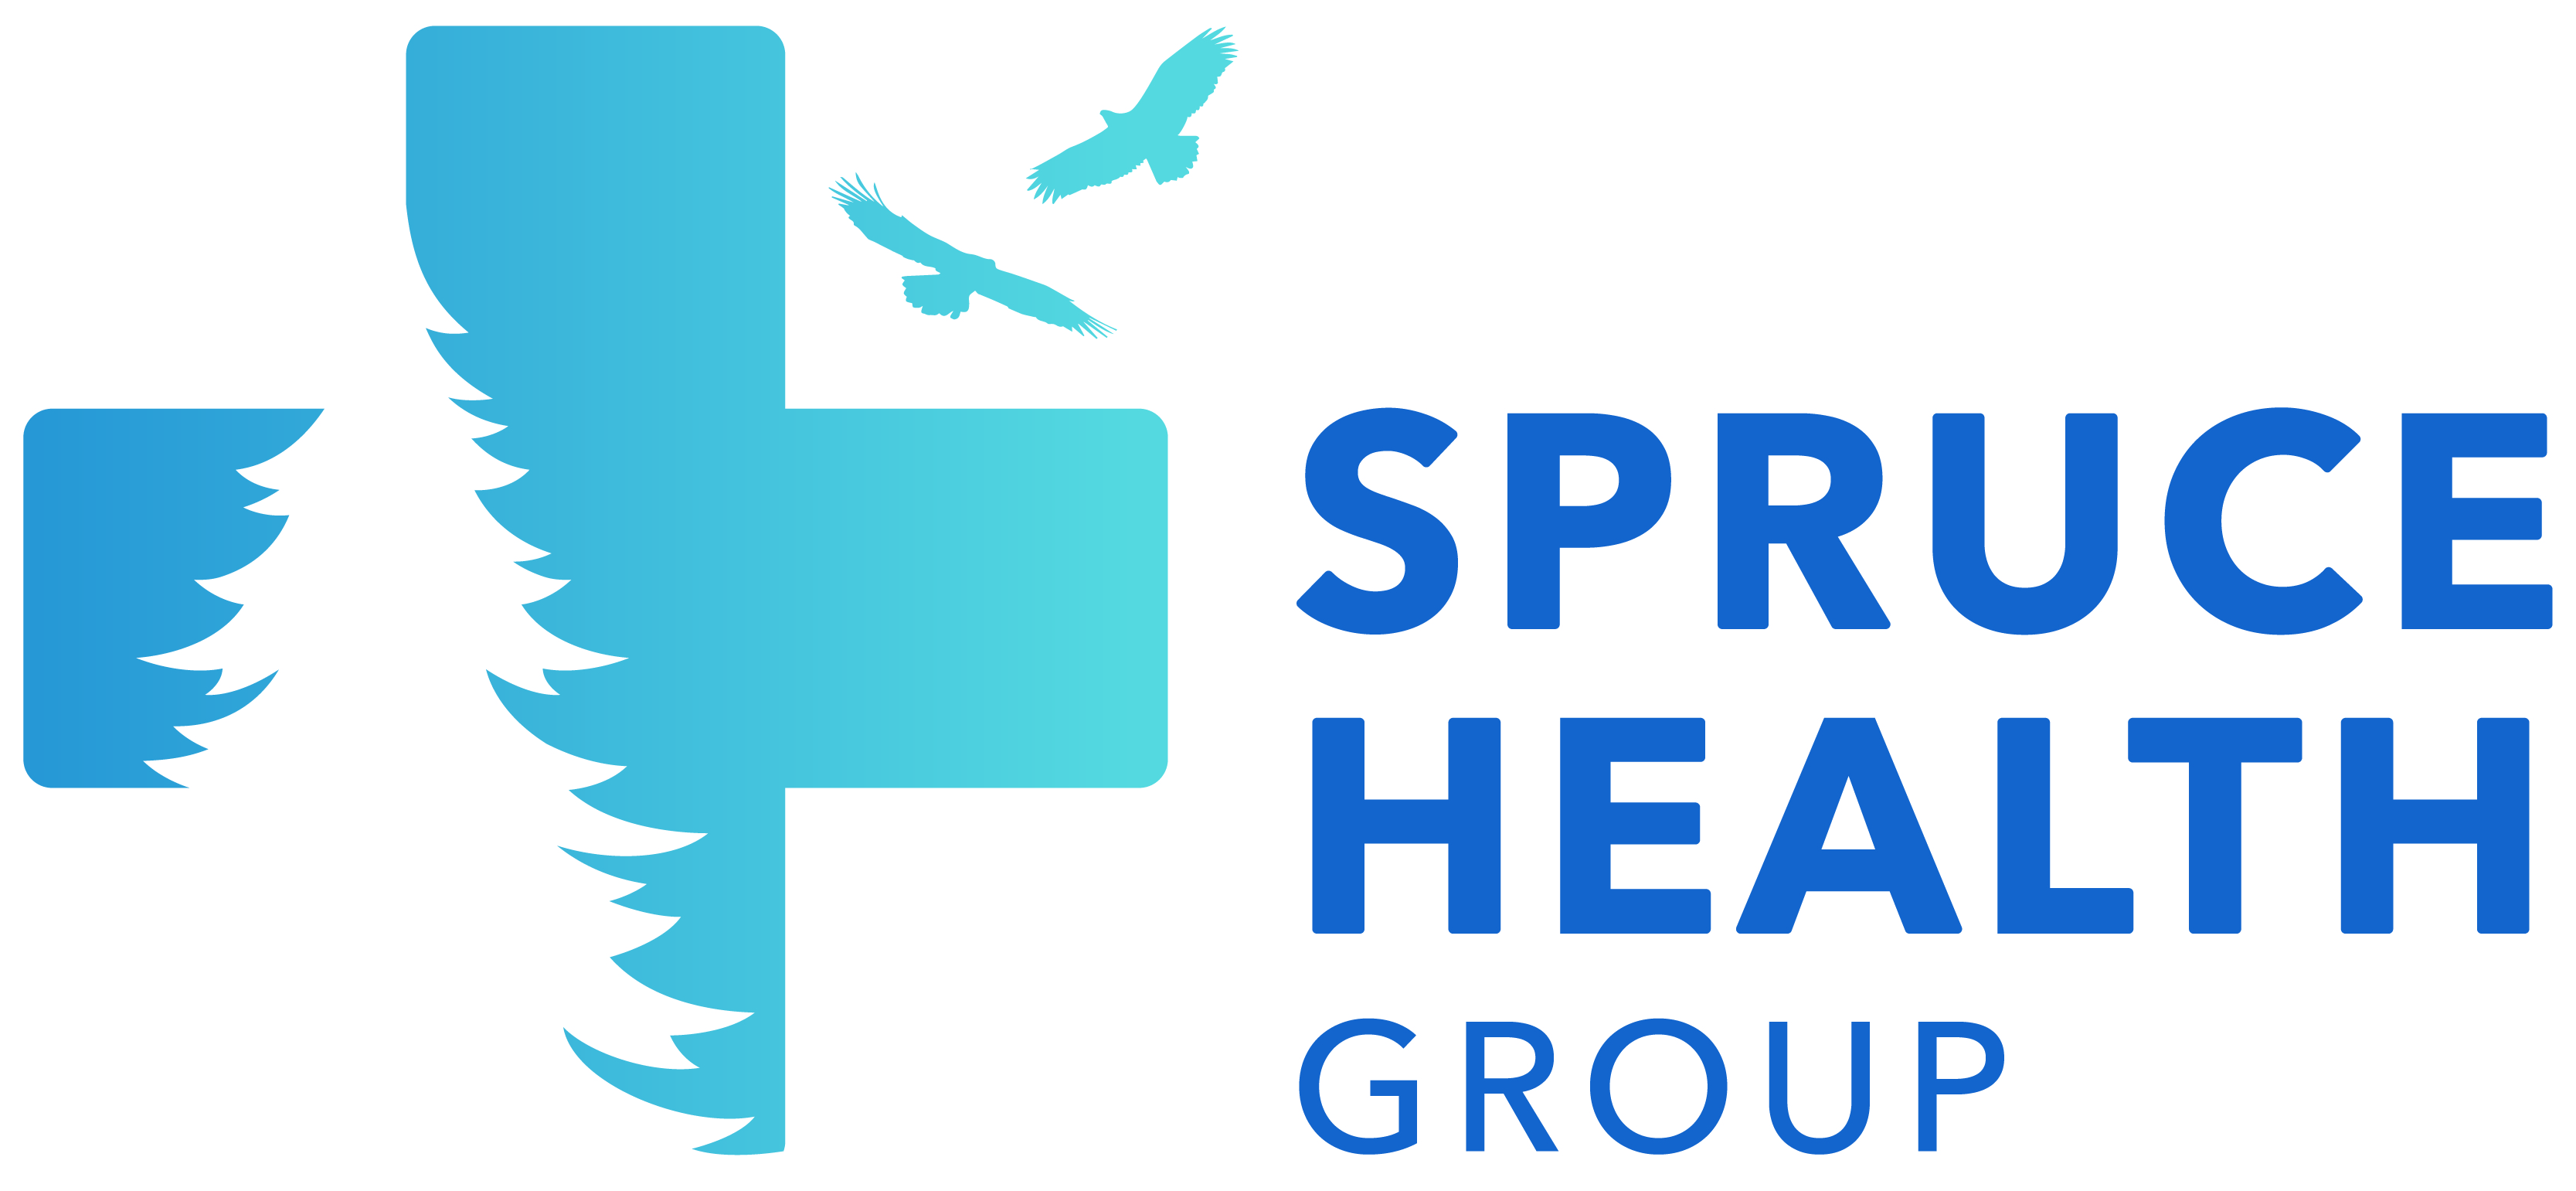 Spruce Health Group